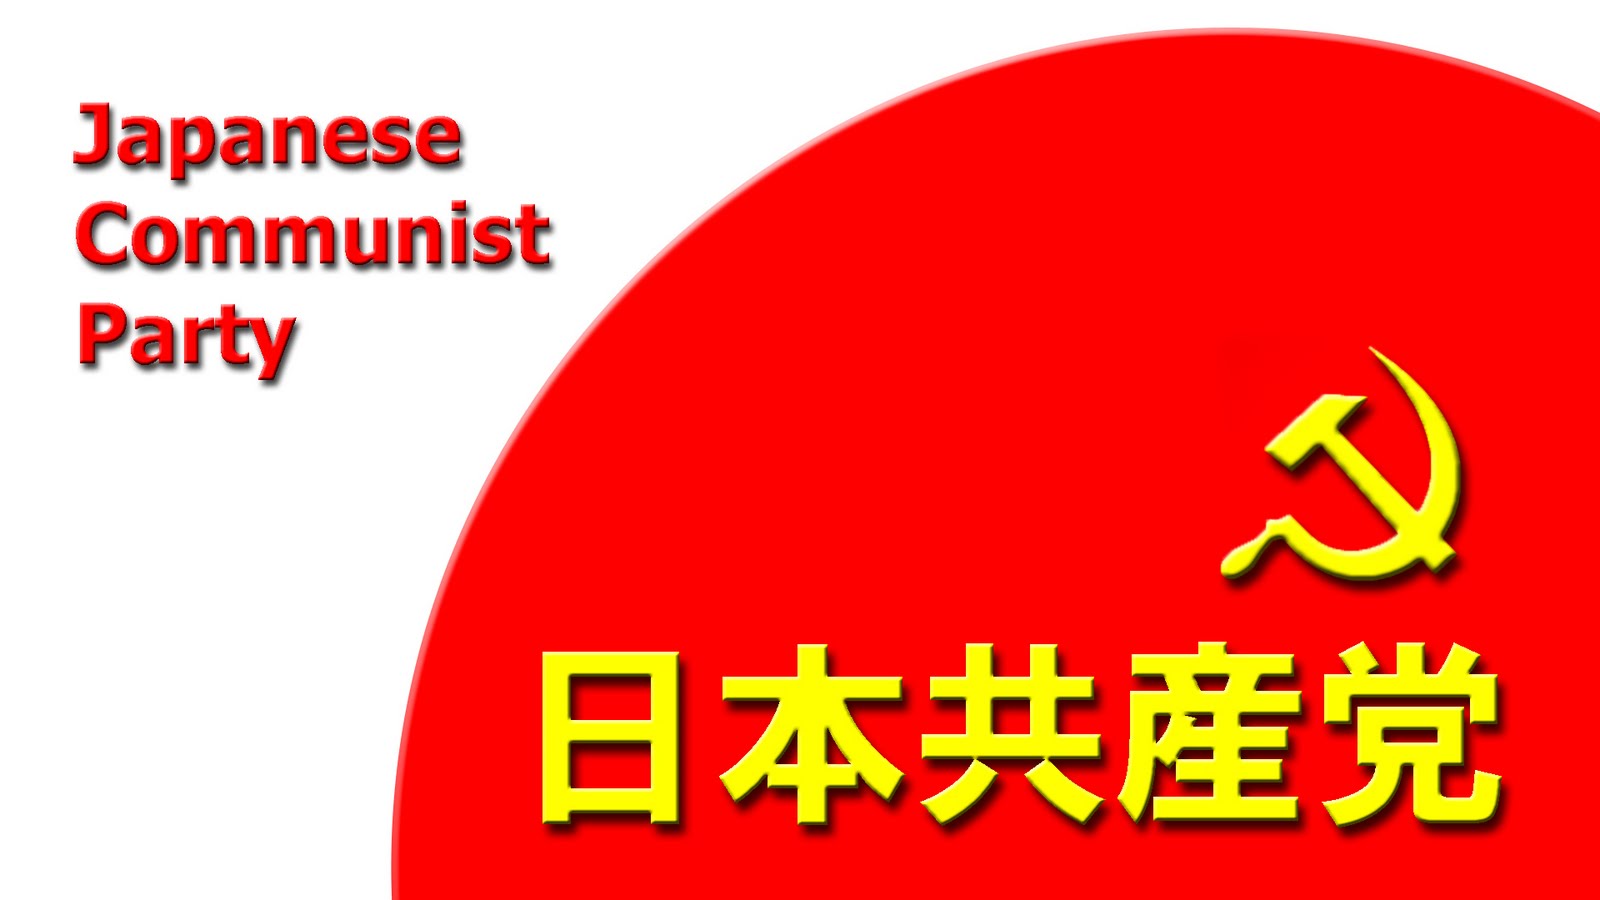 14,3 millions de signatures en soutien des initiatives des communistes japonais